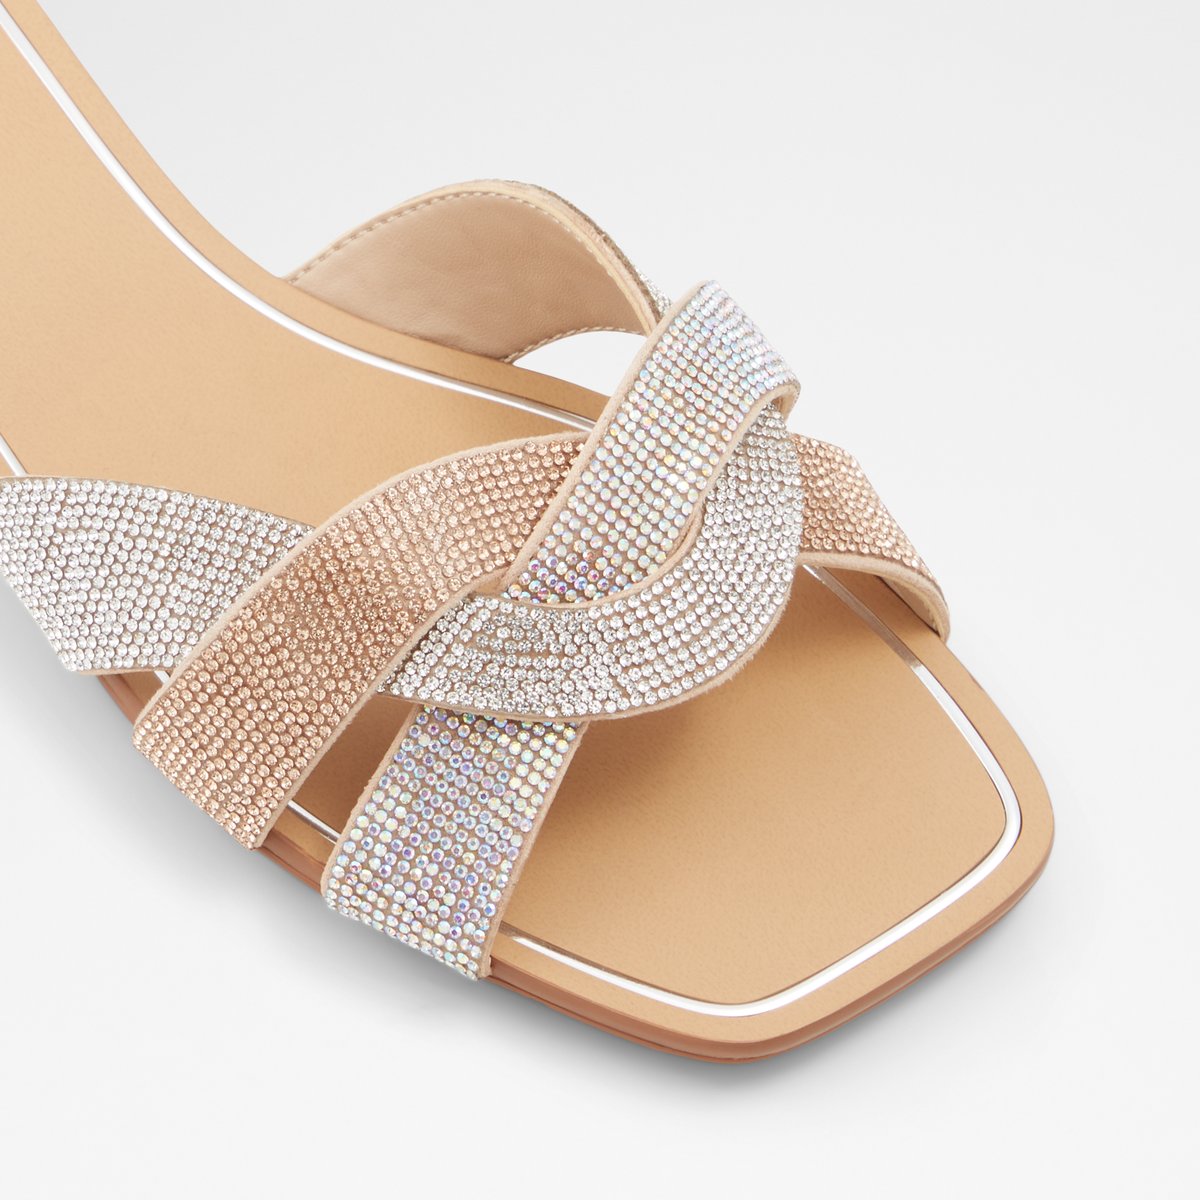 Coredith Bone Women's Flat Sandals | ALDO Canada